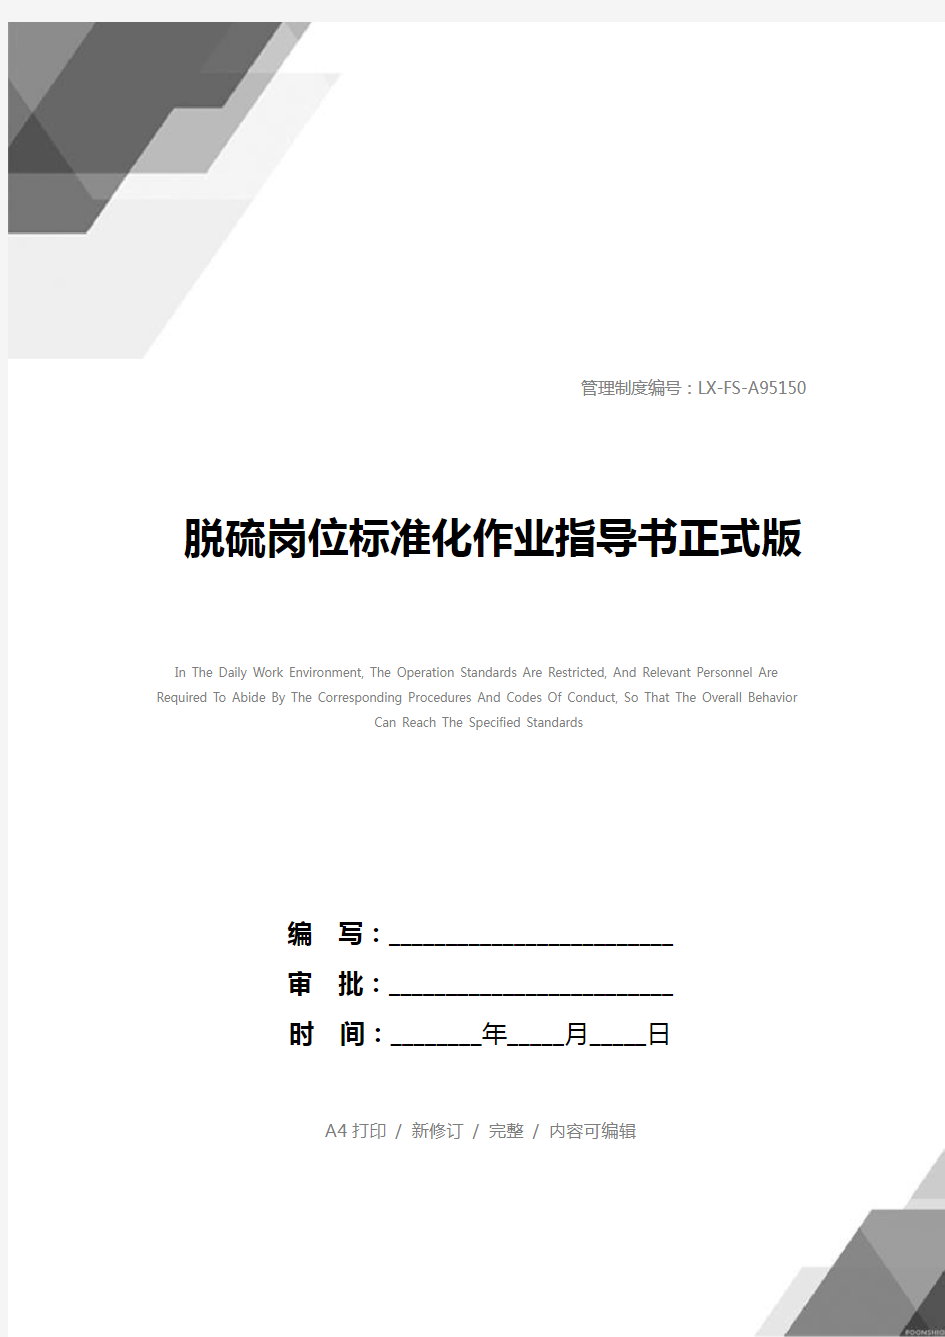 脱硫岗位标准化作业指导书正式版